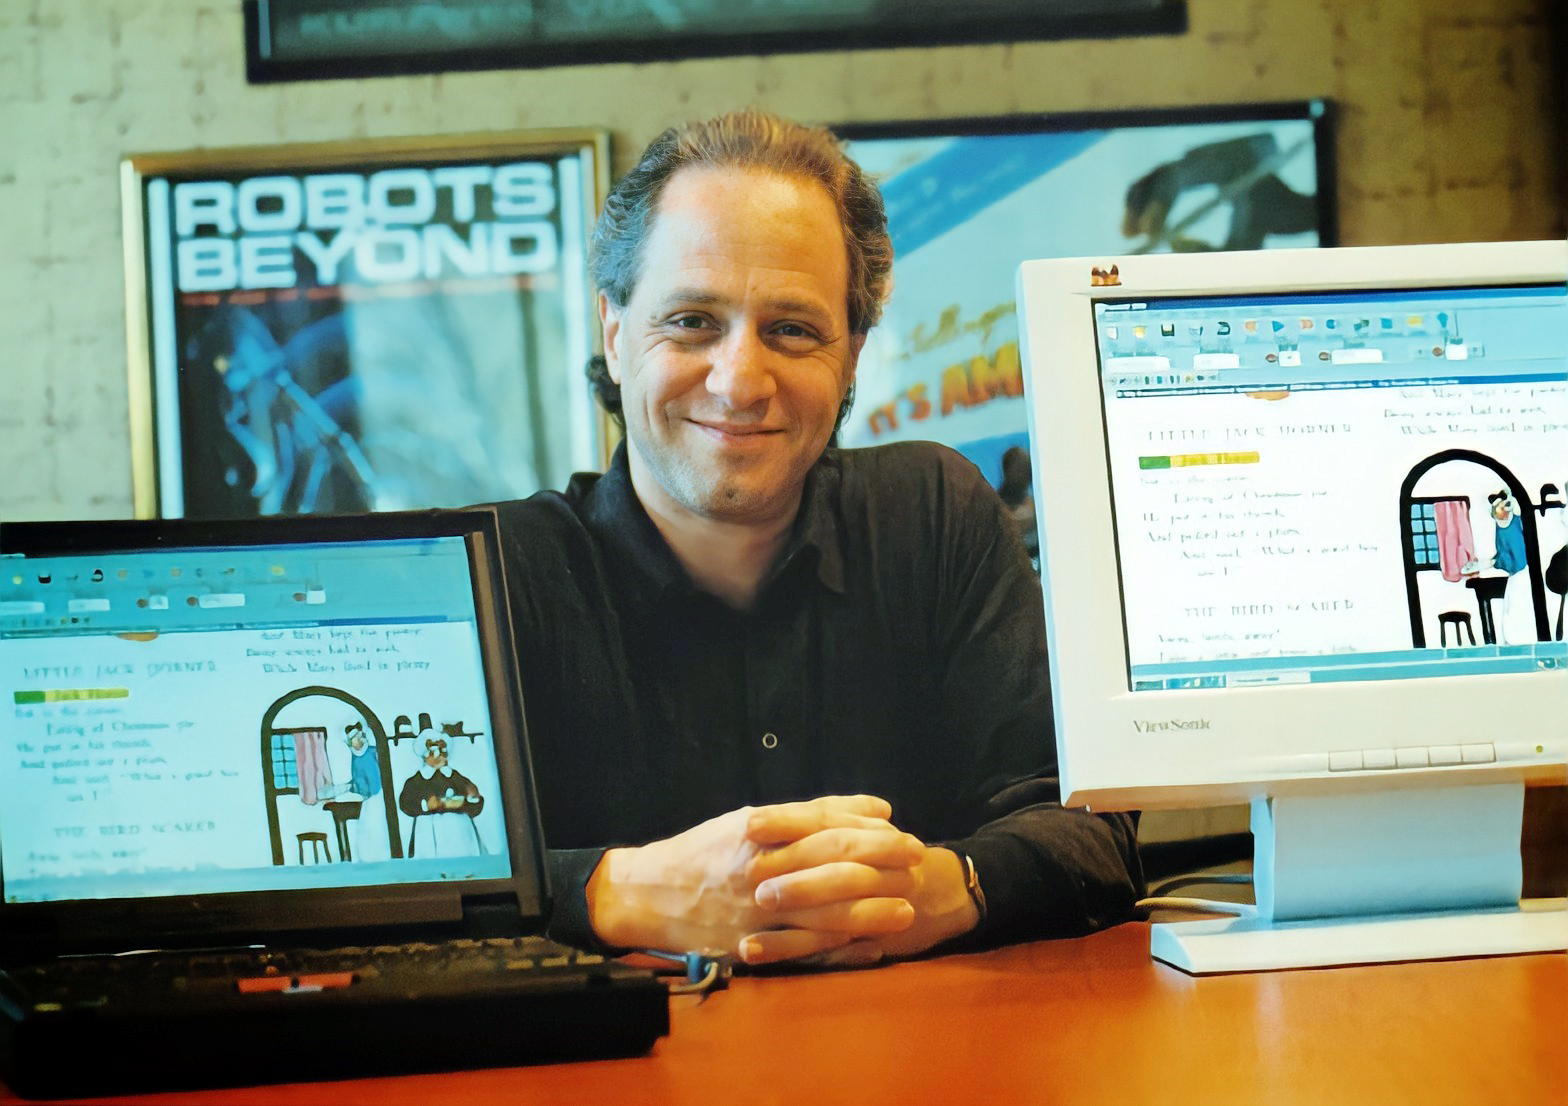 В 1996 году Курцвейл основал компанию Kurzweil Educational Systems для разработки новых технологий распознавания образов, которые помогали бы людям с ограниченными возможностями.